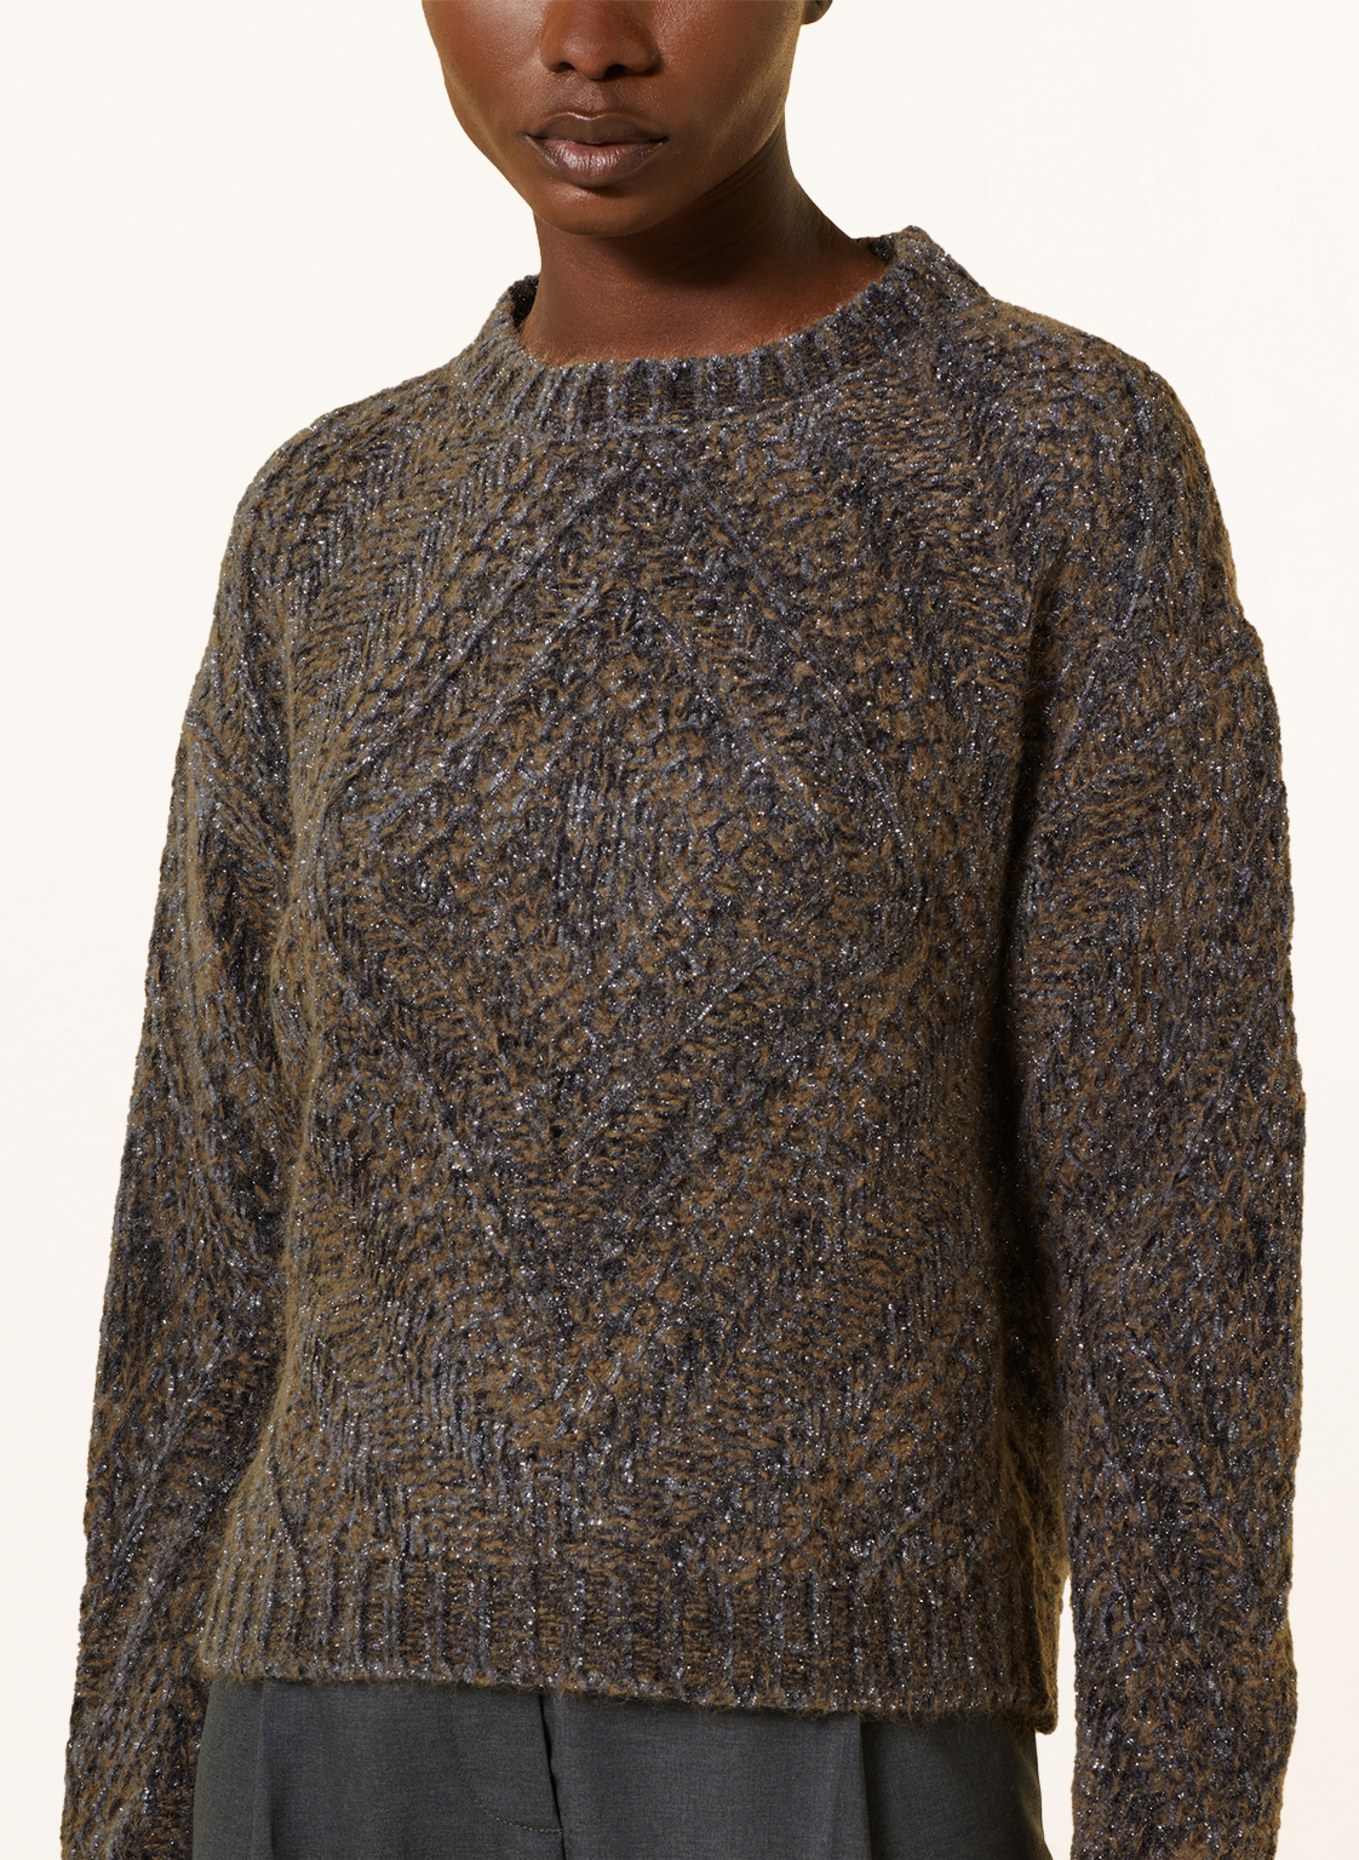 FABIANA FILIPPI Sweater with glitter thread, Color: DARK GRAY/ BROWN (Image 4)